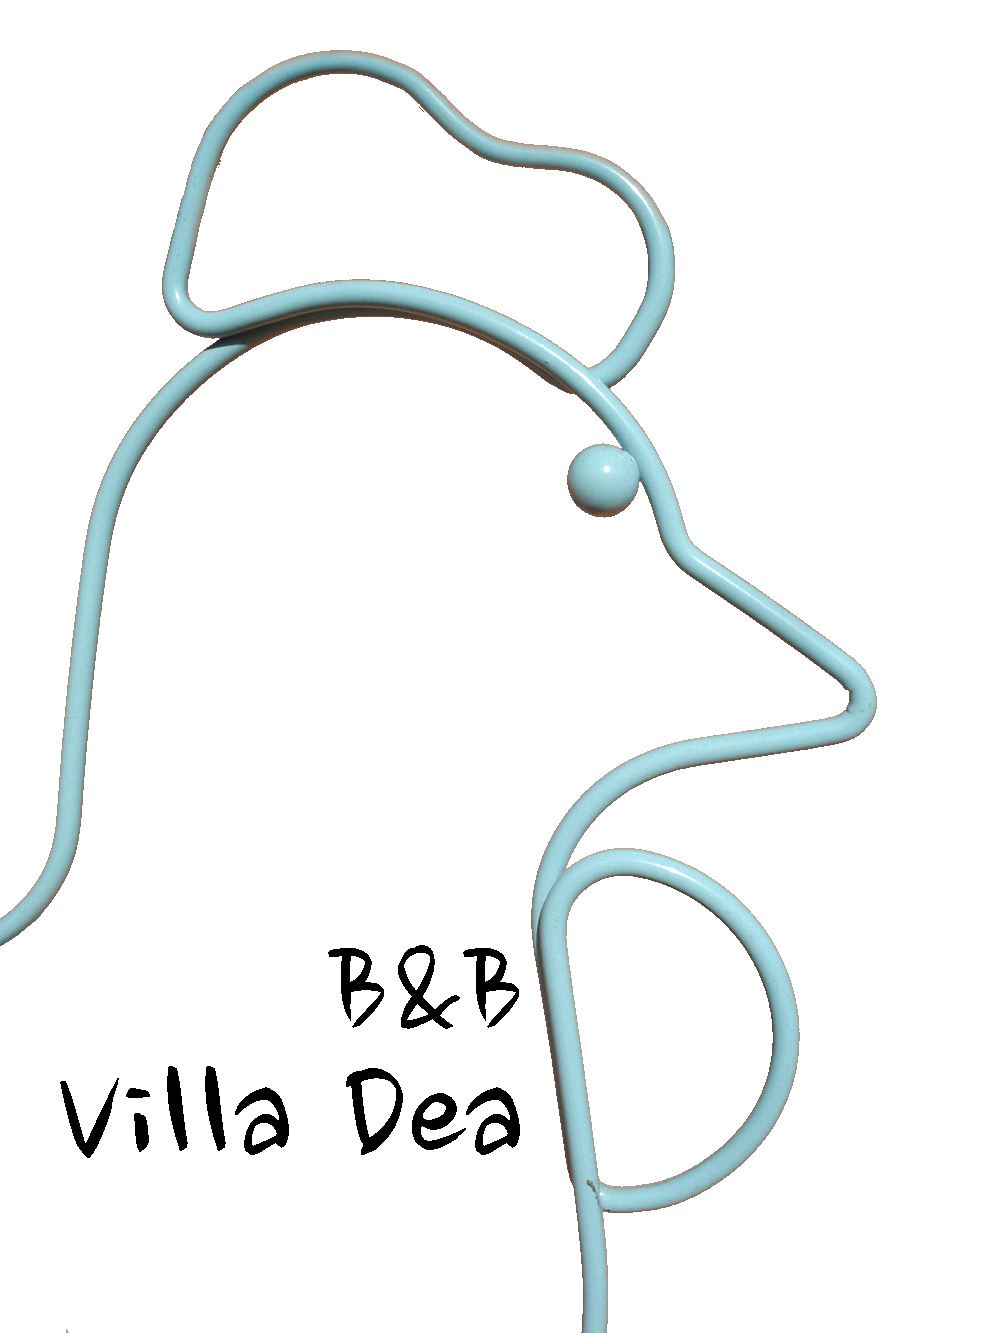 B&B Villa Dea - vacanze creative